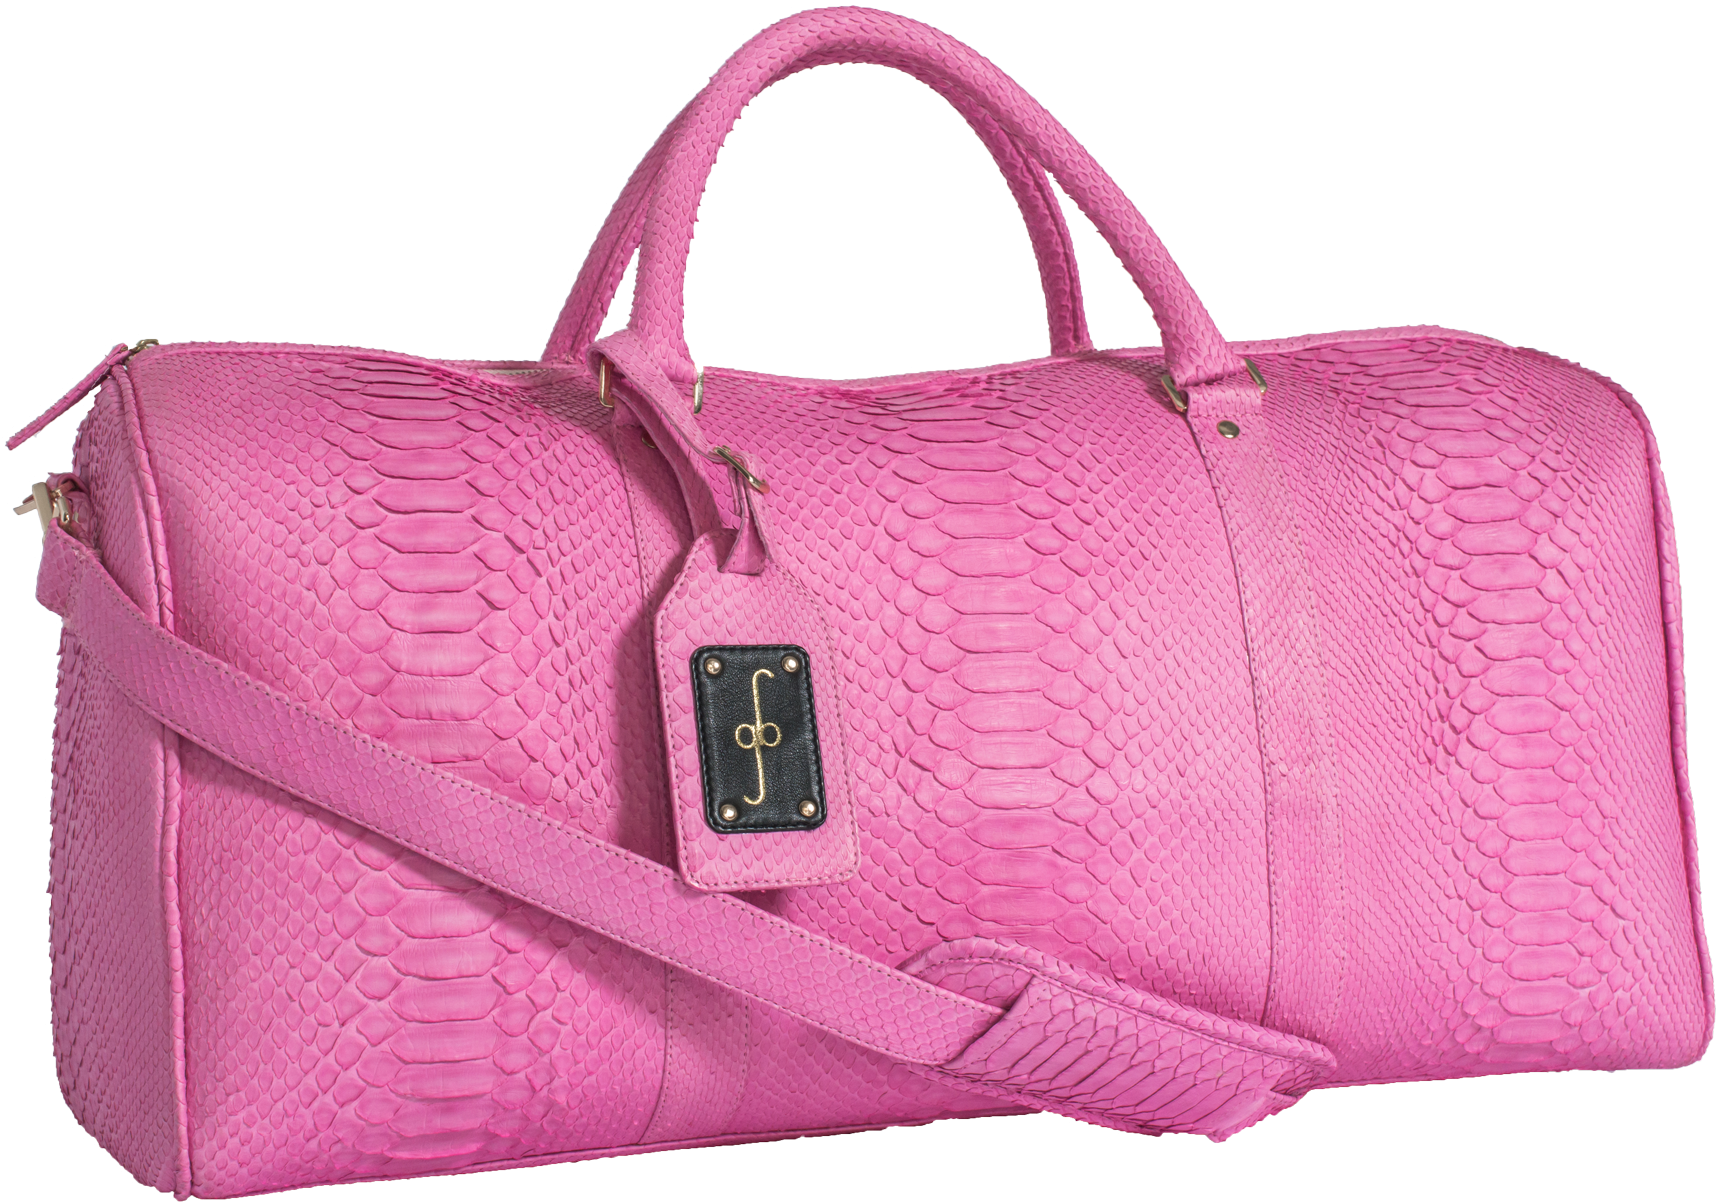 Bag Pink Bag Lady Handbag Lady PNG Images | PSD Free Download - Pikbest